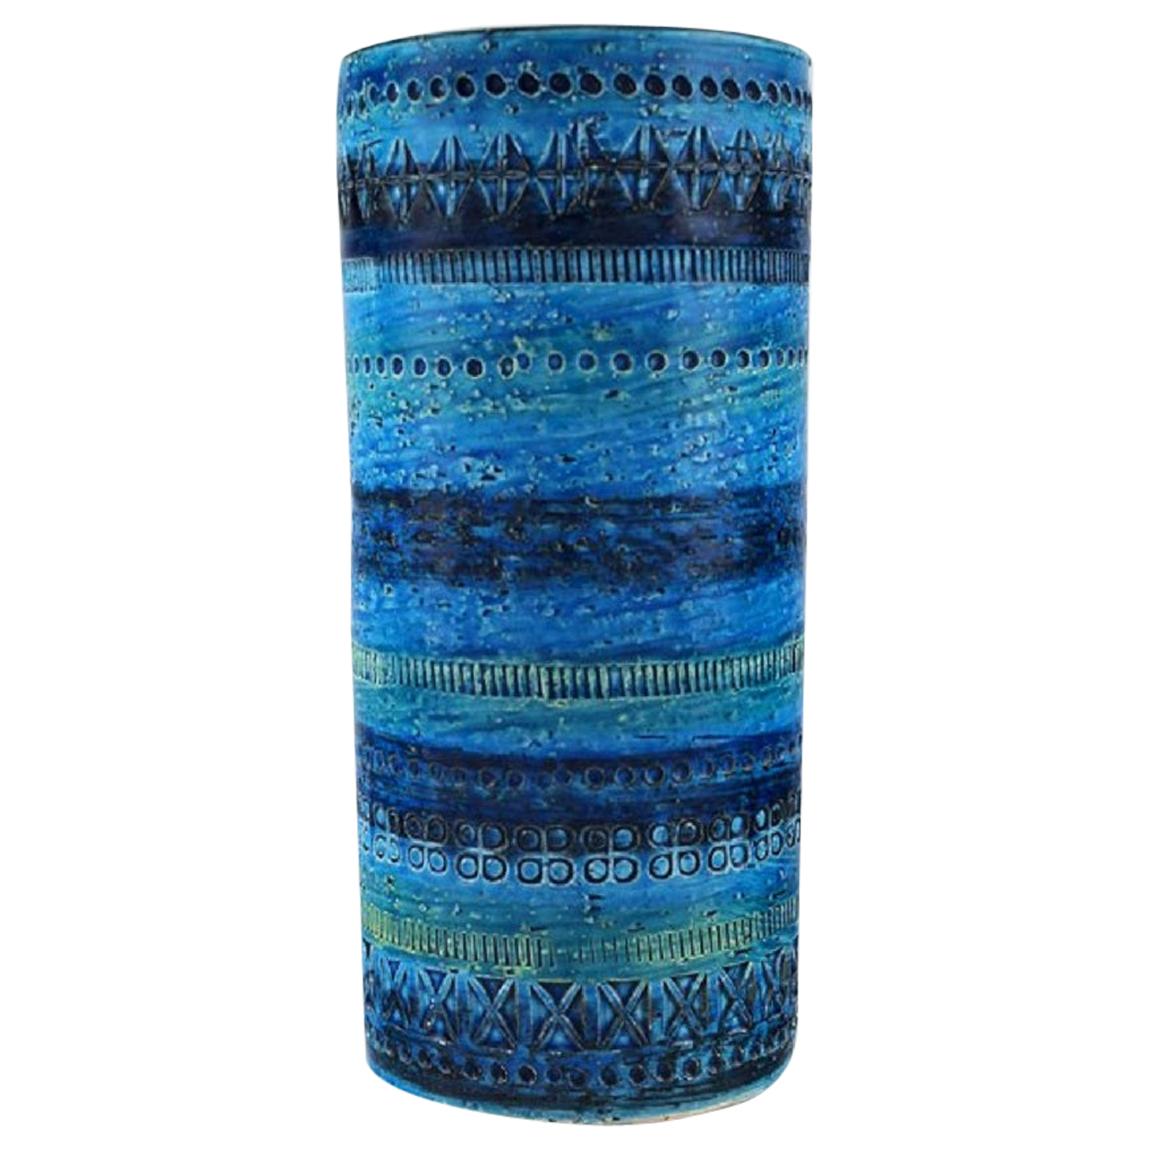 Aldo Londi for Bitossi, Cylindrical Vase in Rimini Blue-Glazed Ceramics